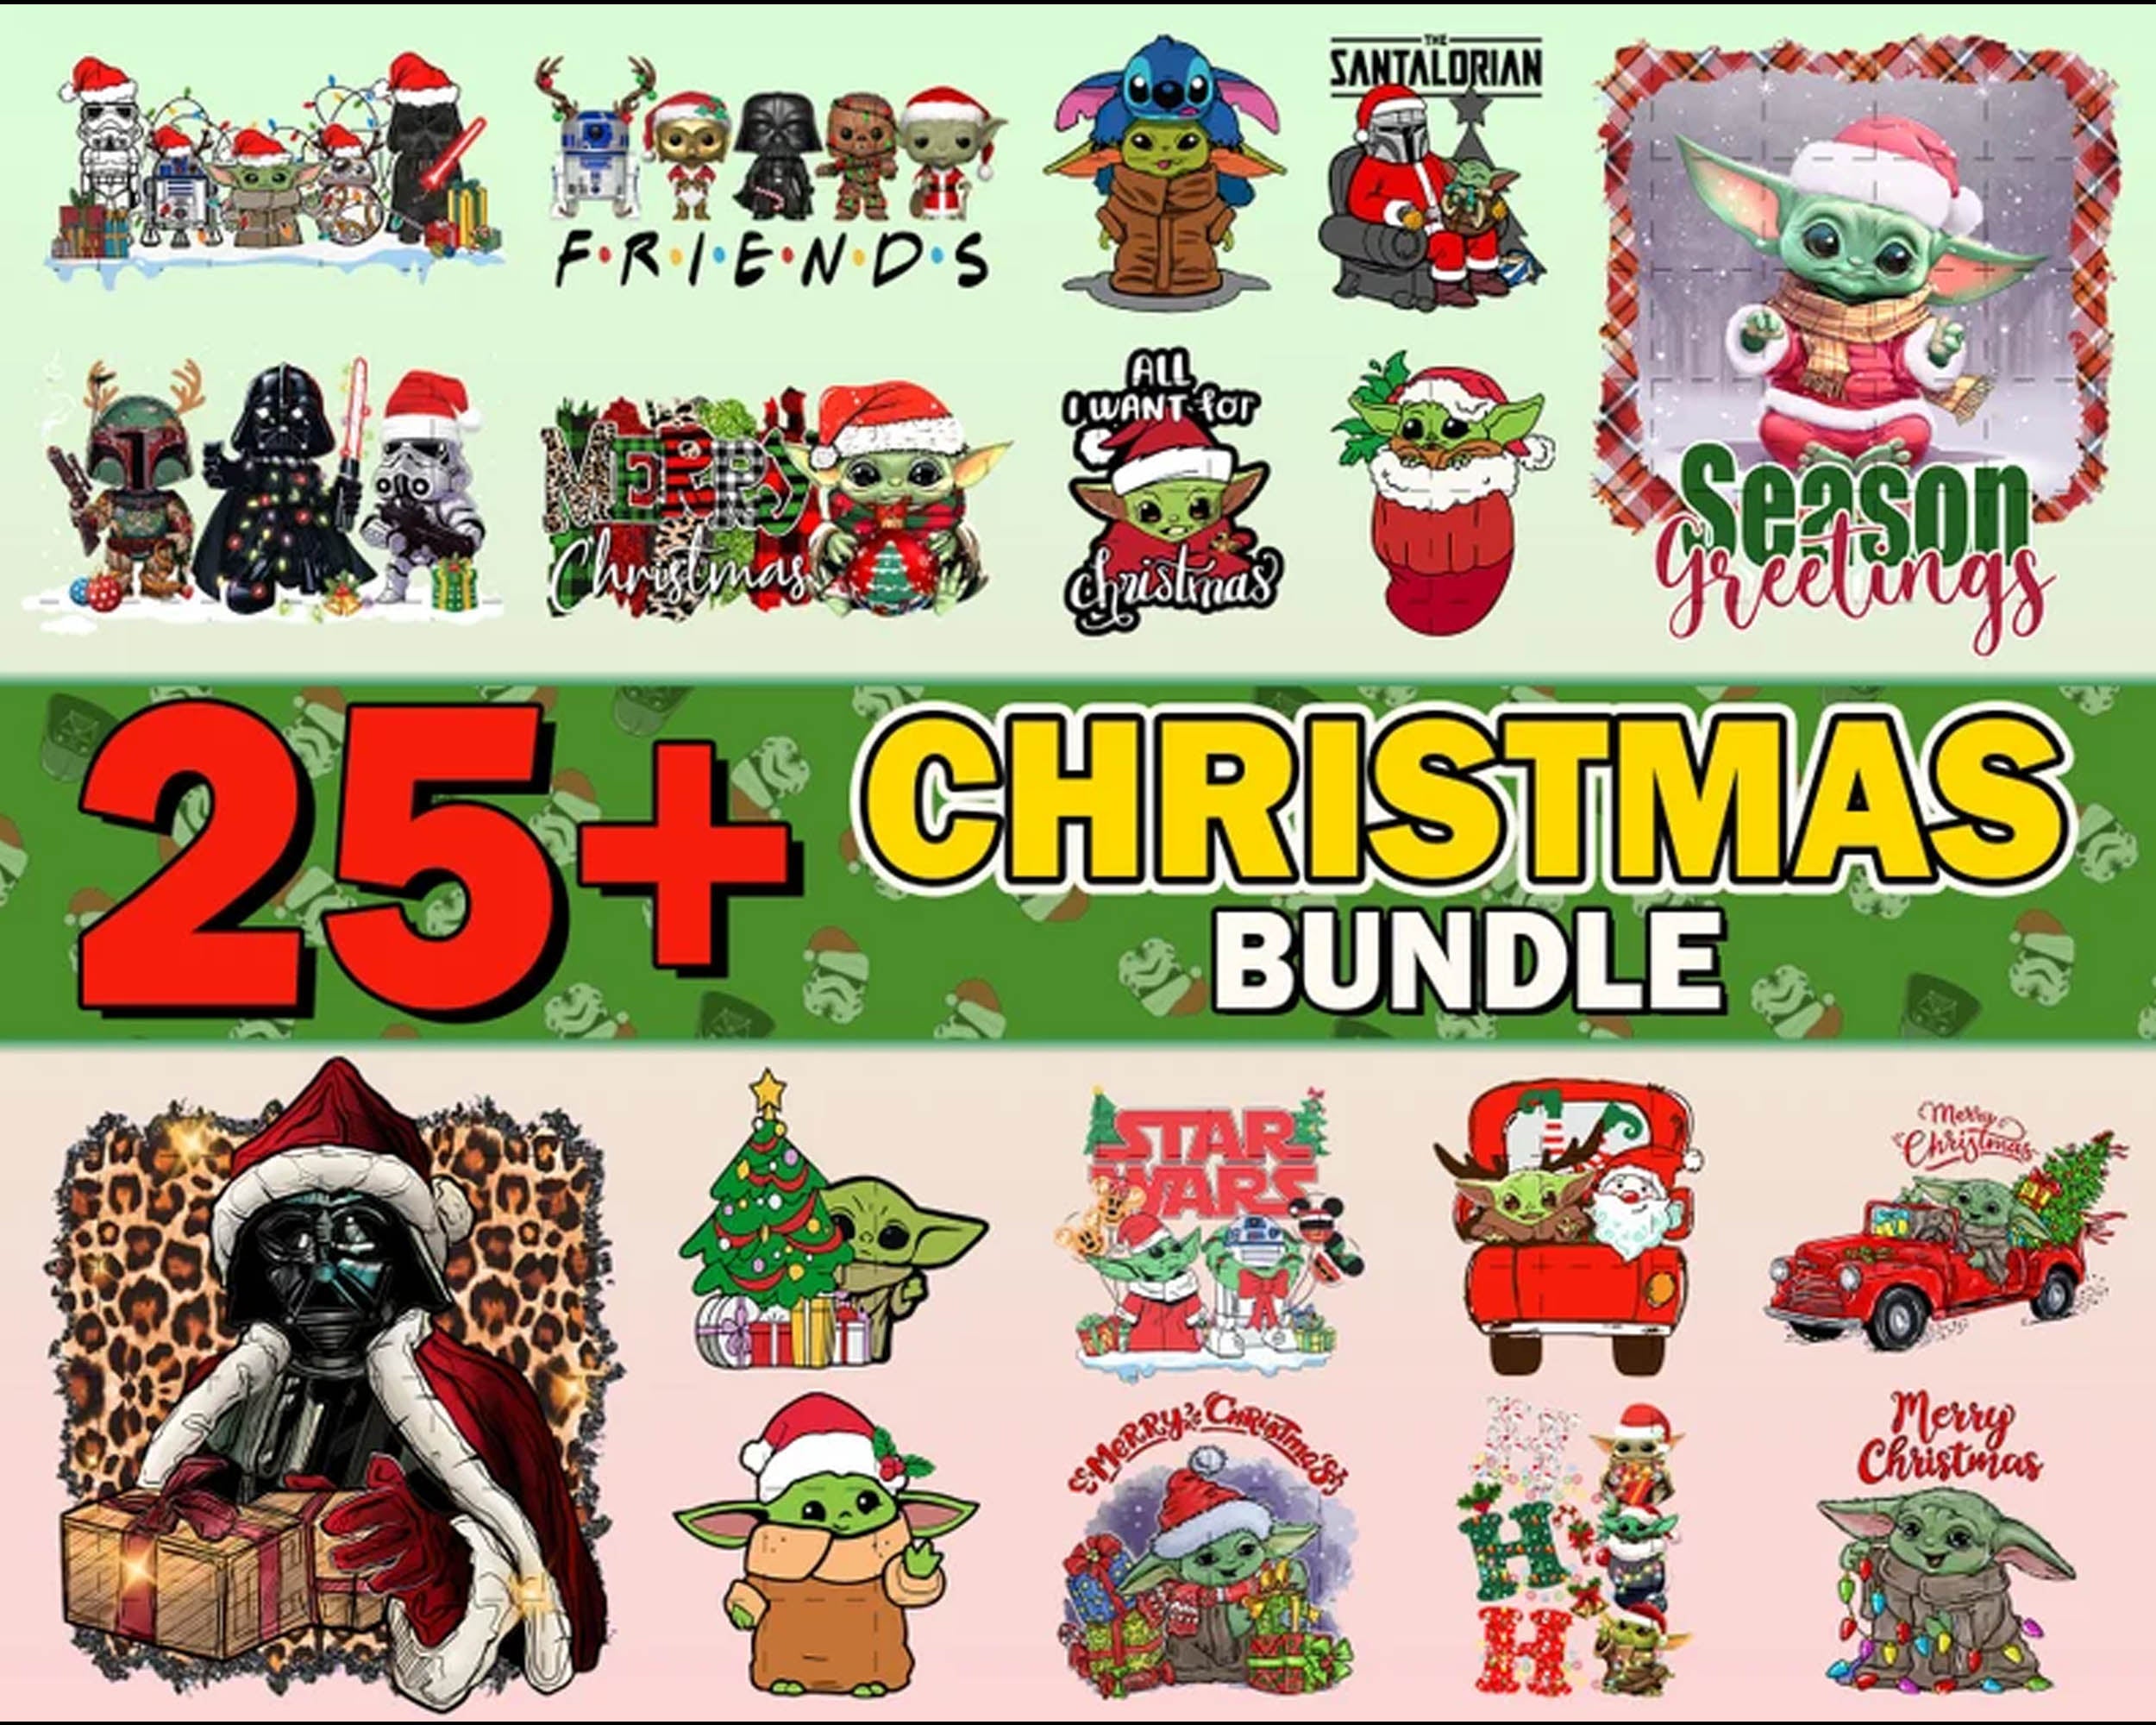 25+ Christmas Baby Yoda Bundle Svg, Christmas Baby Yoda Svg, Baby Grogu, Christmas digital bundle, PNG formats, Digital files